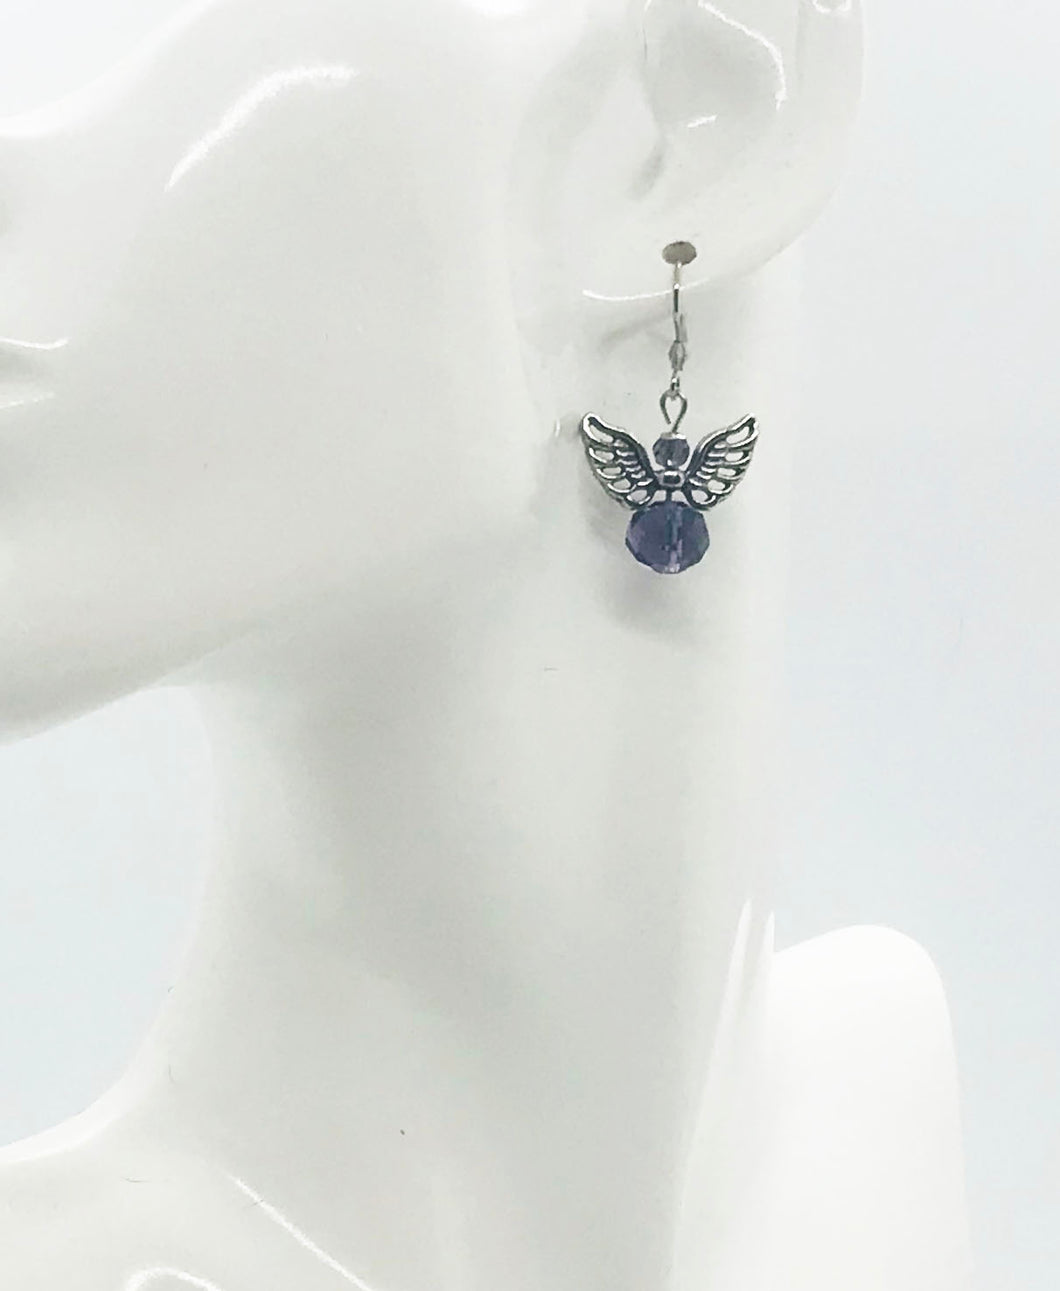 Glass Bead Dangle Earrings - E19-2285